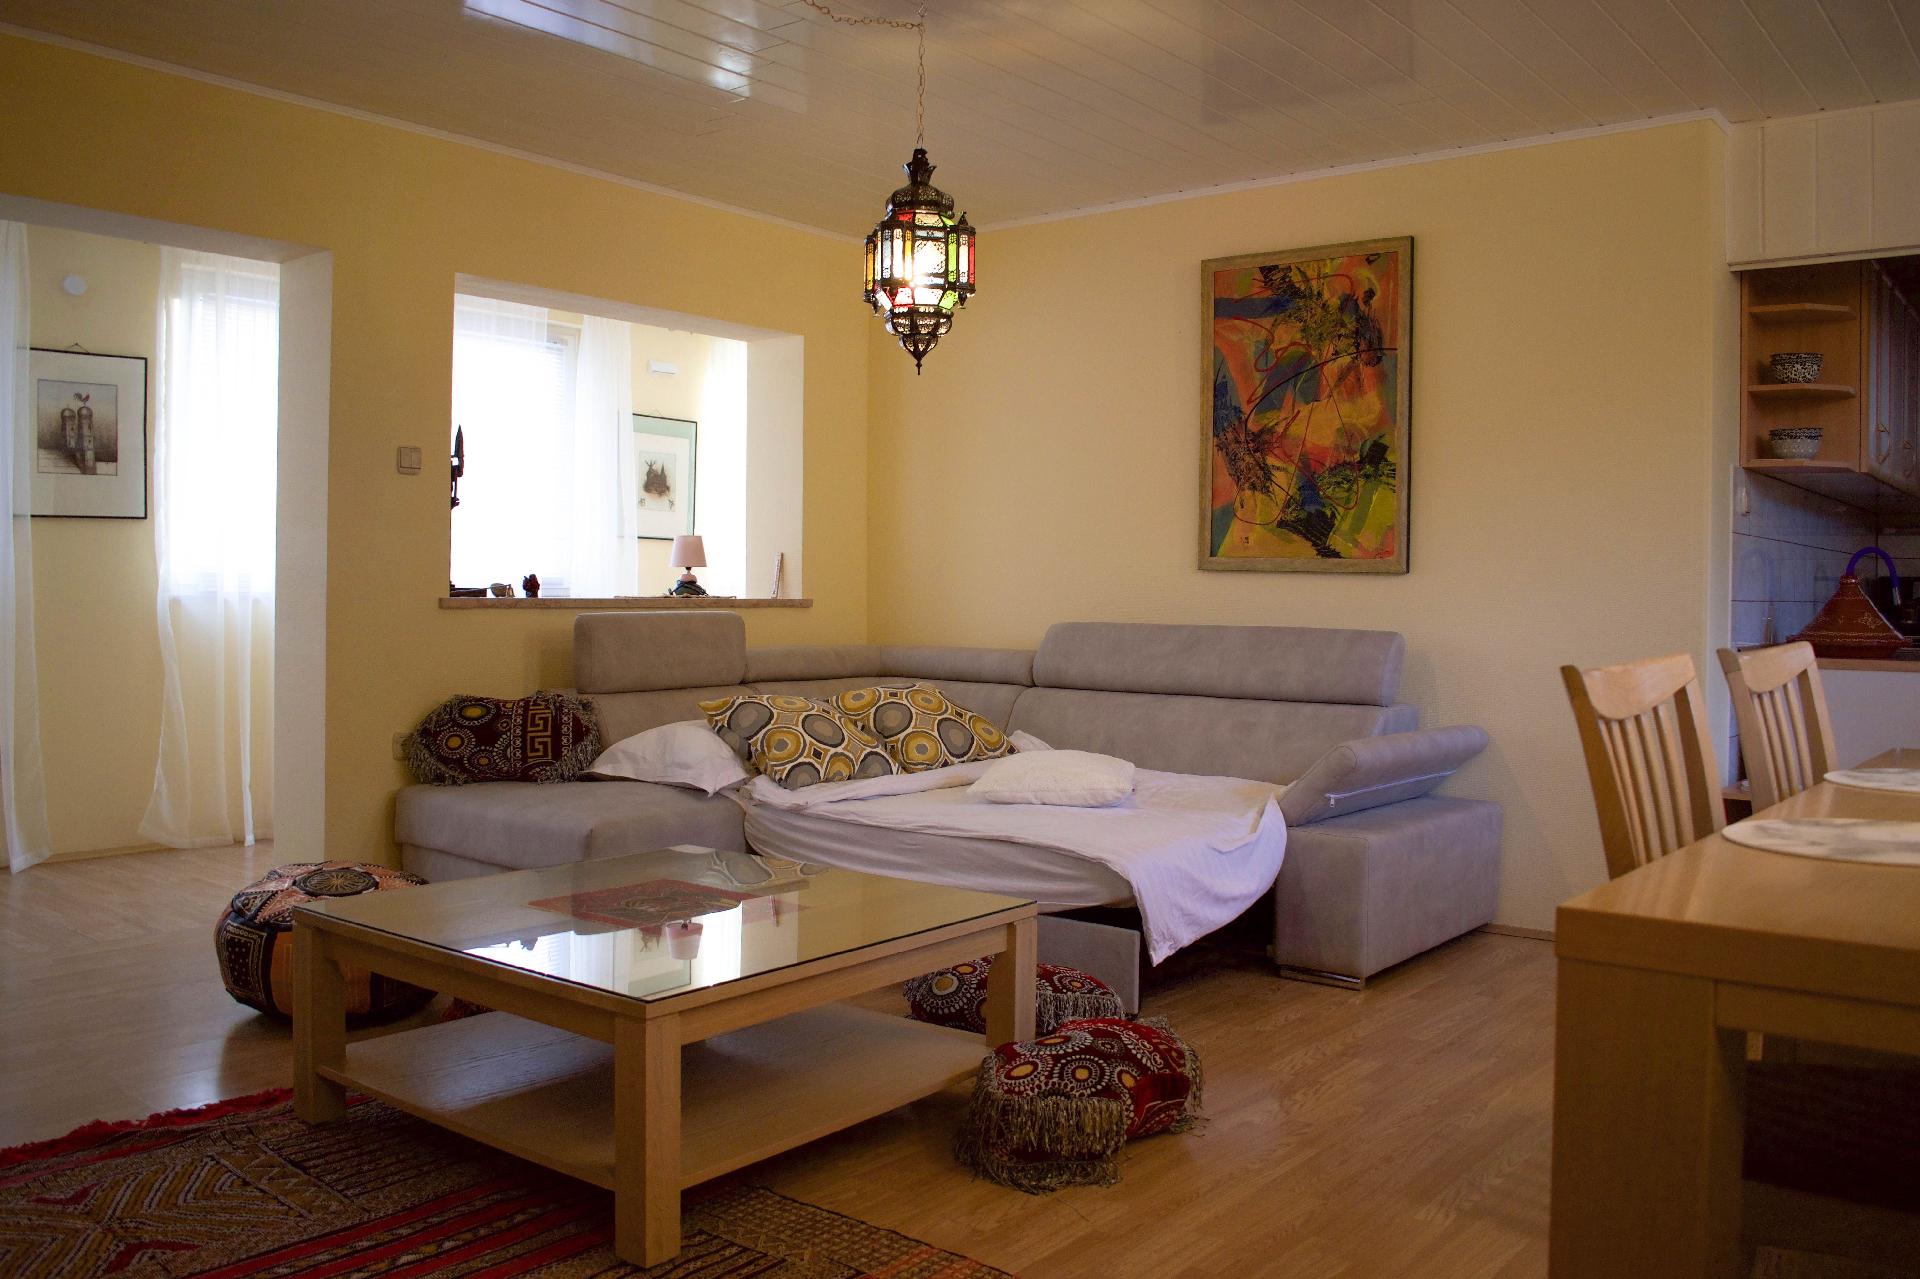 Ferienwohnung für 4 Personen ca. 100 m²  Ferienhaus in Kroatien